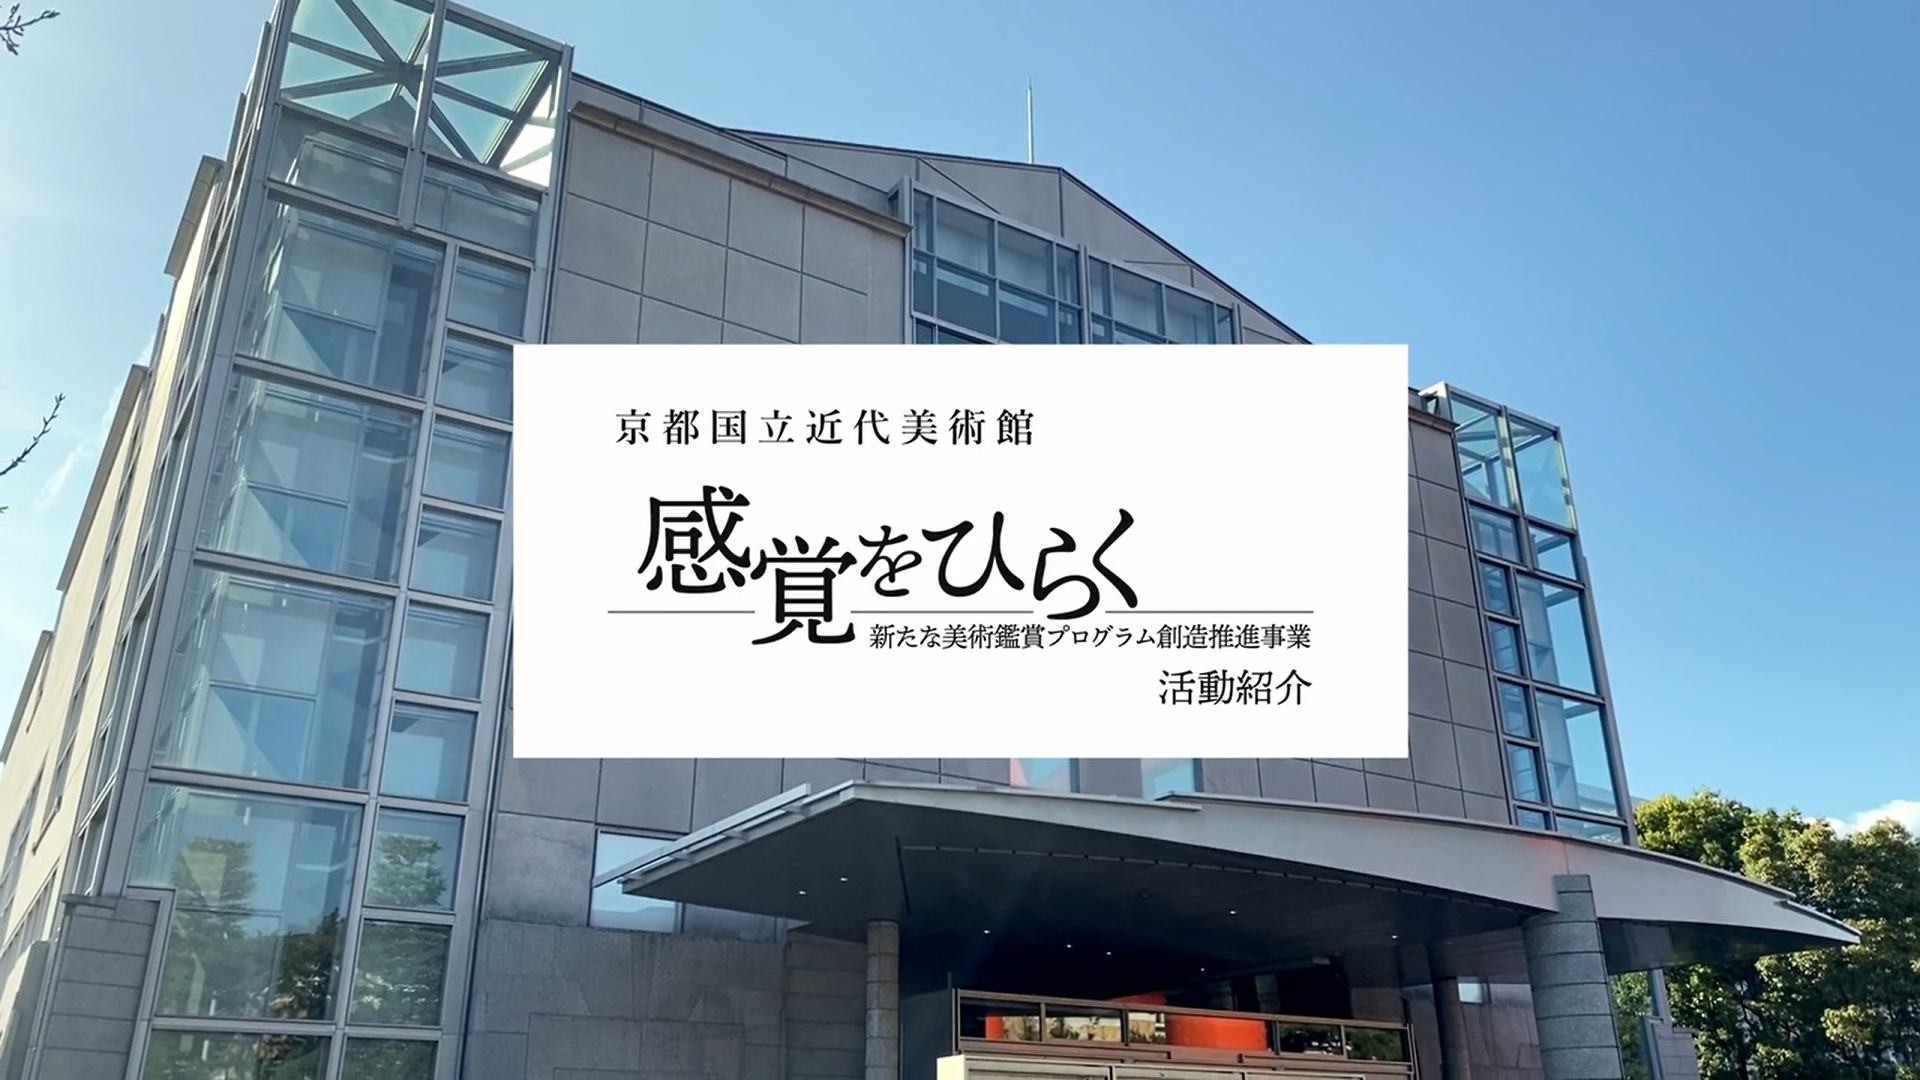 京都国立近代美術館感覚をひらくー新たな美術鑑賞プログラム創造推進事業
